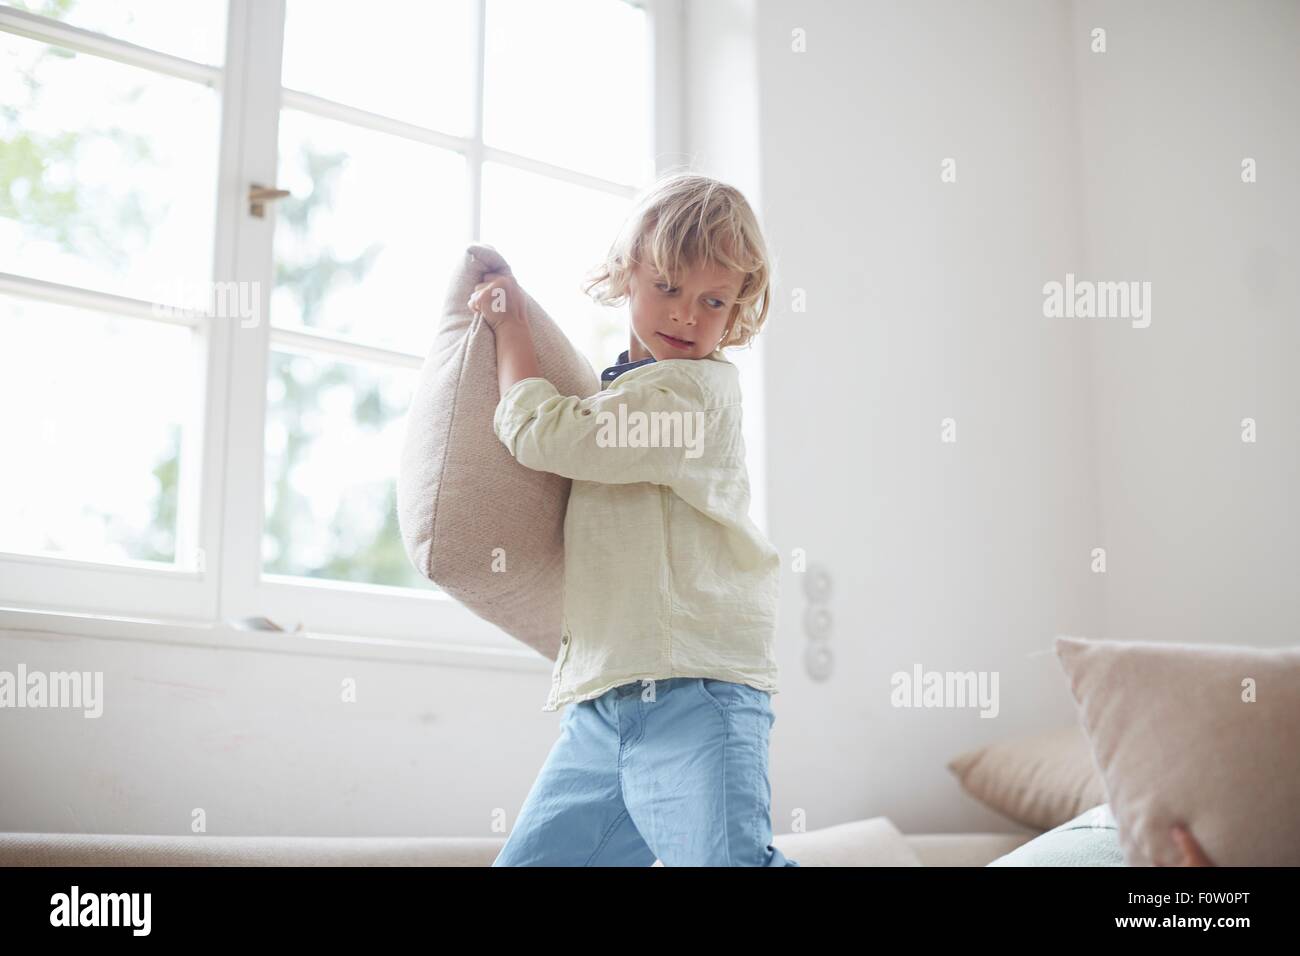 Niño sosteniendo una almohada preparando para lanzar Foto de stock